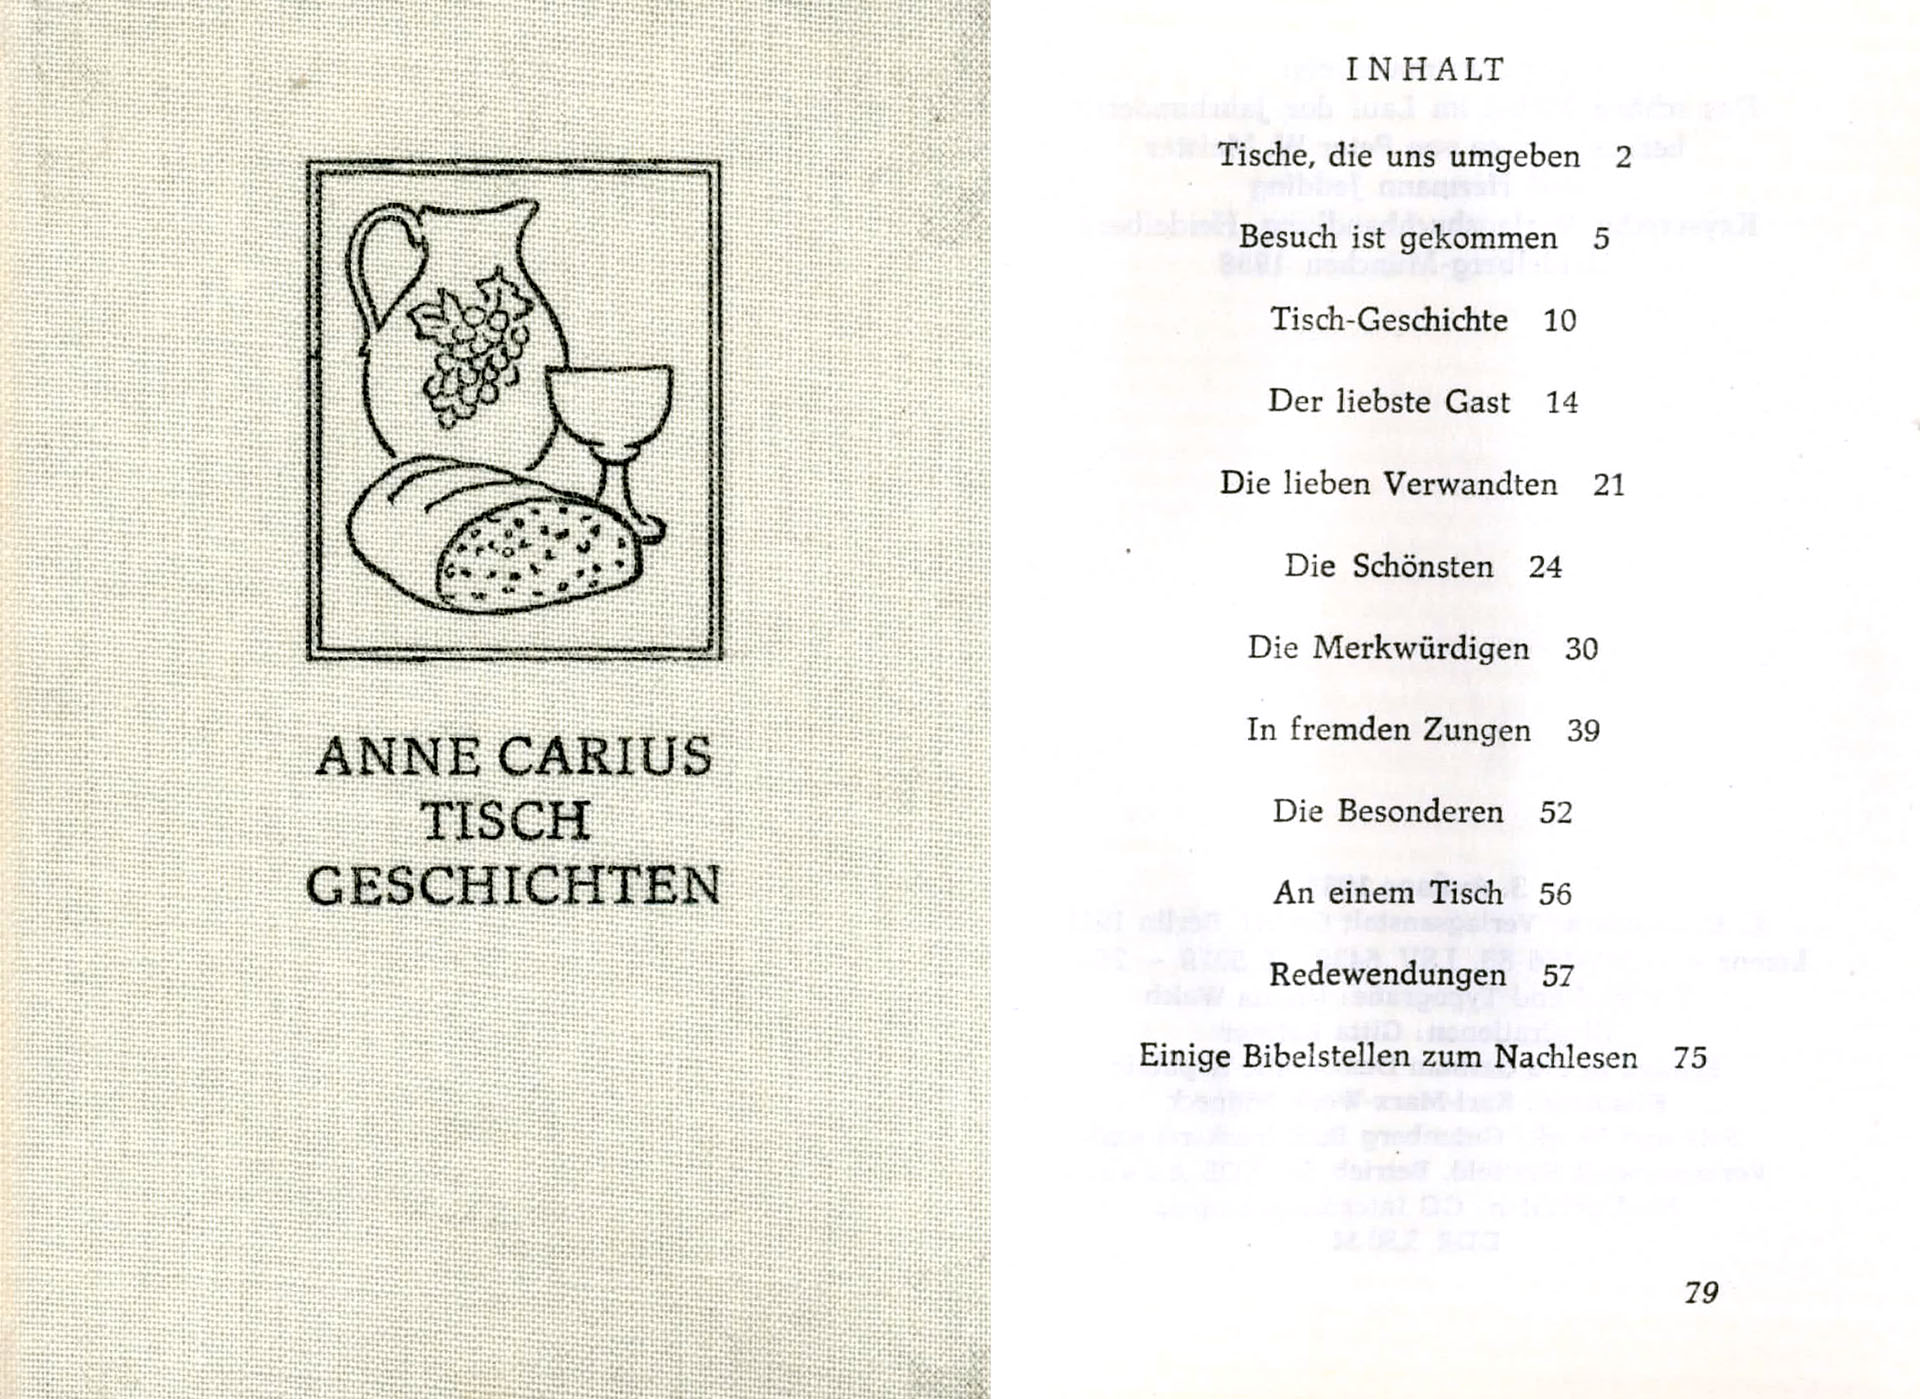 Tischgeschichten - Carius, Anne